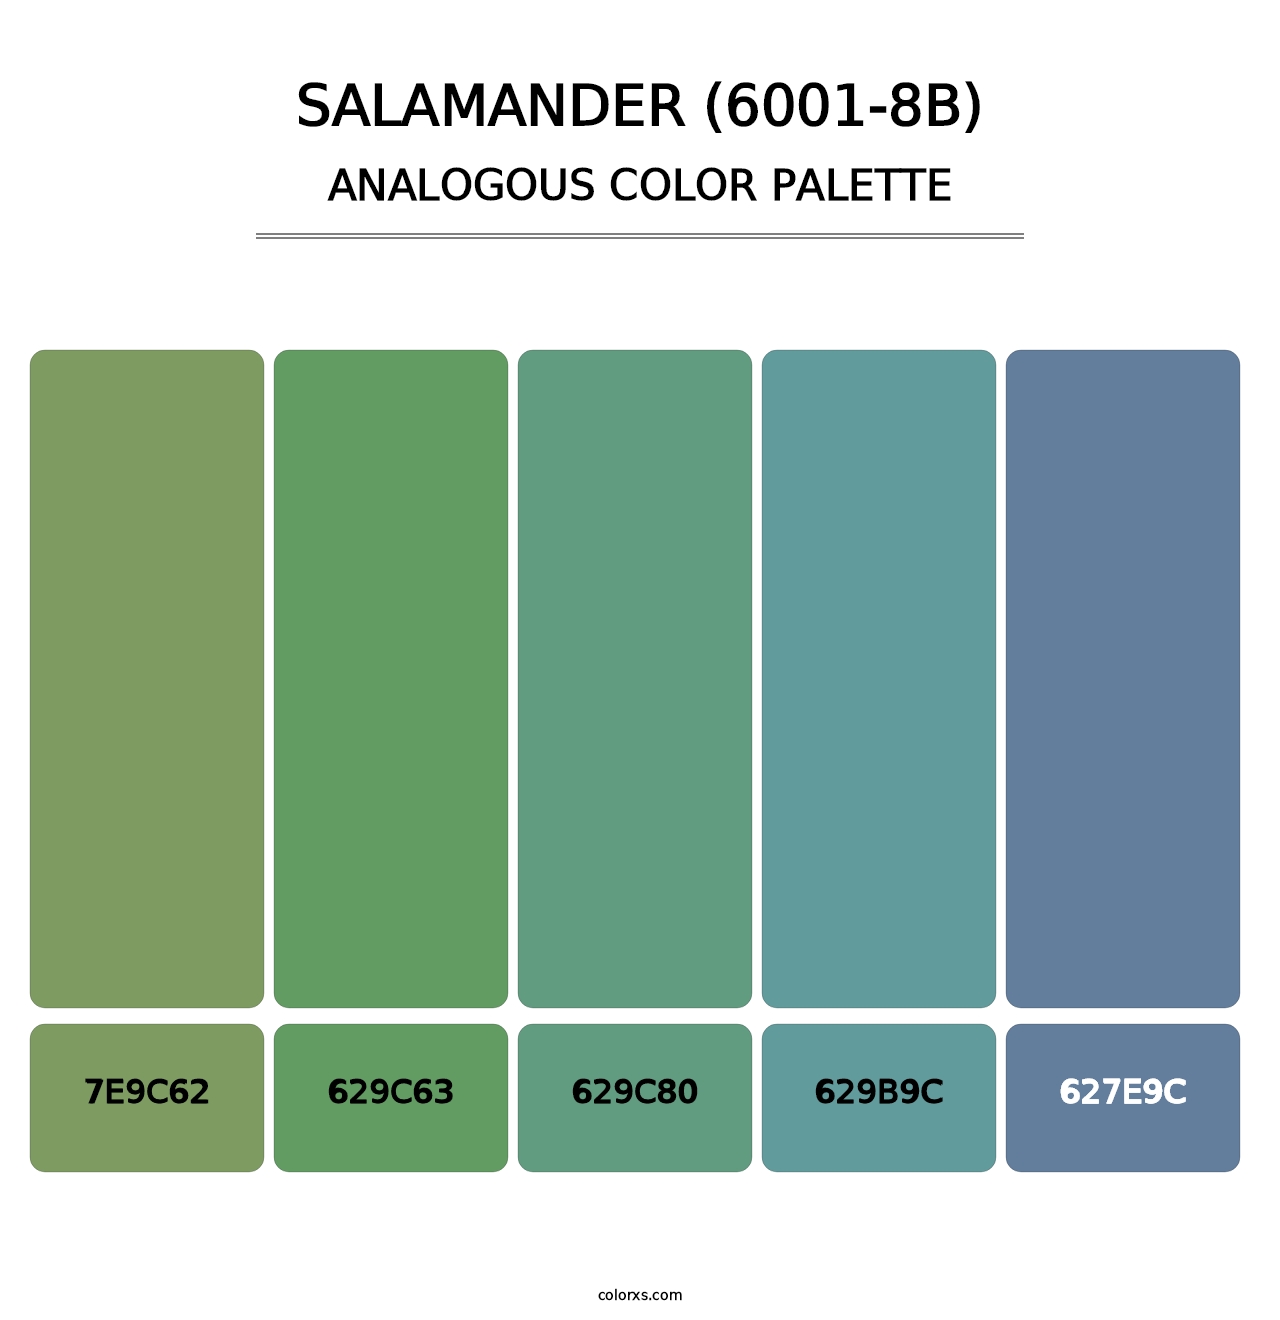 Salamander (6001-8B) - Analogous Color Palette